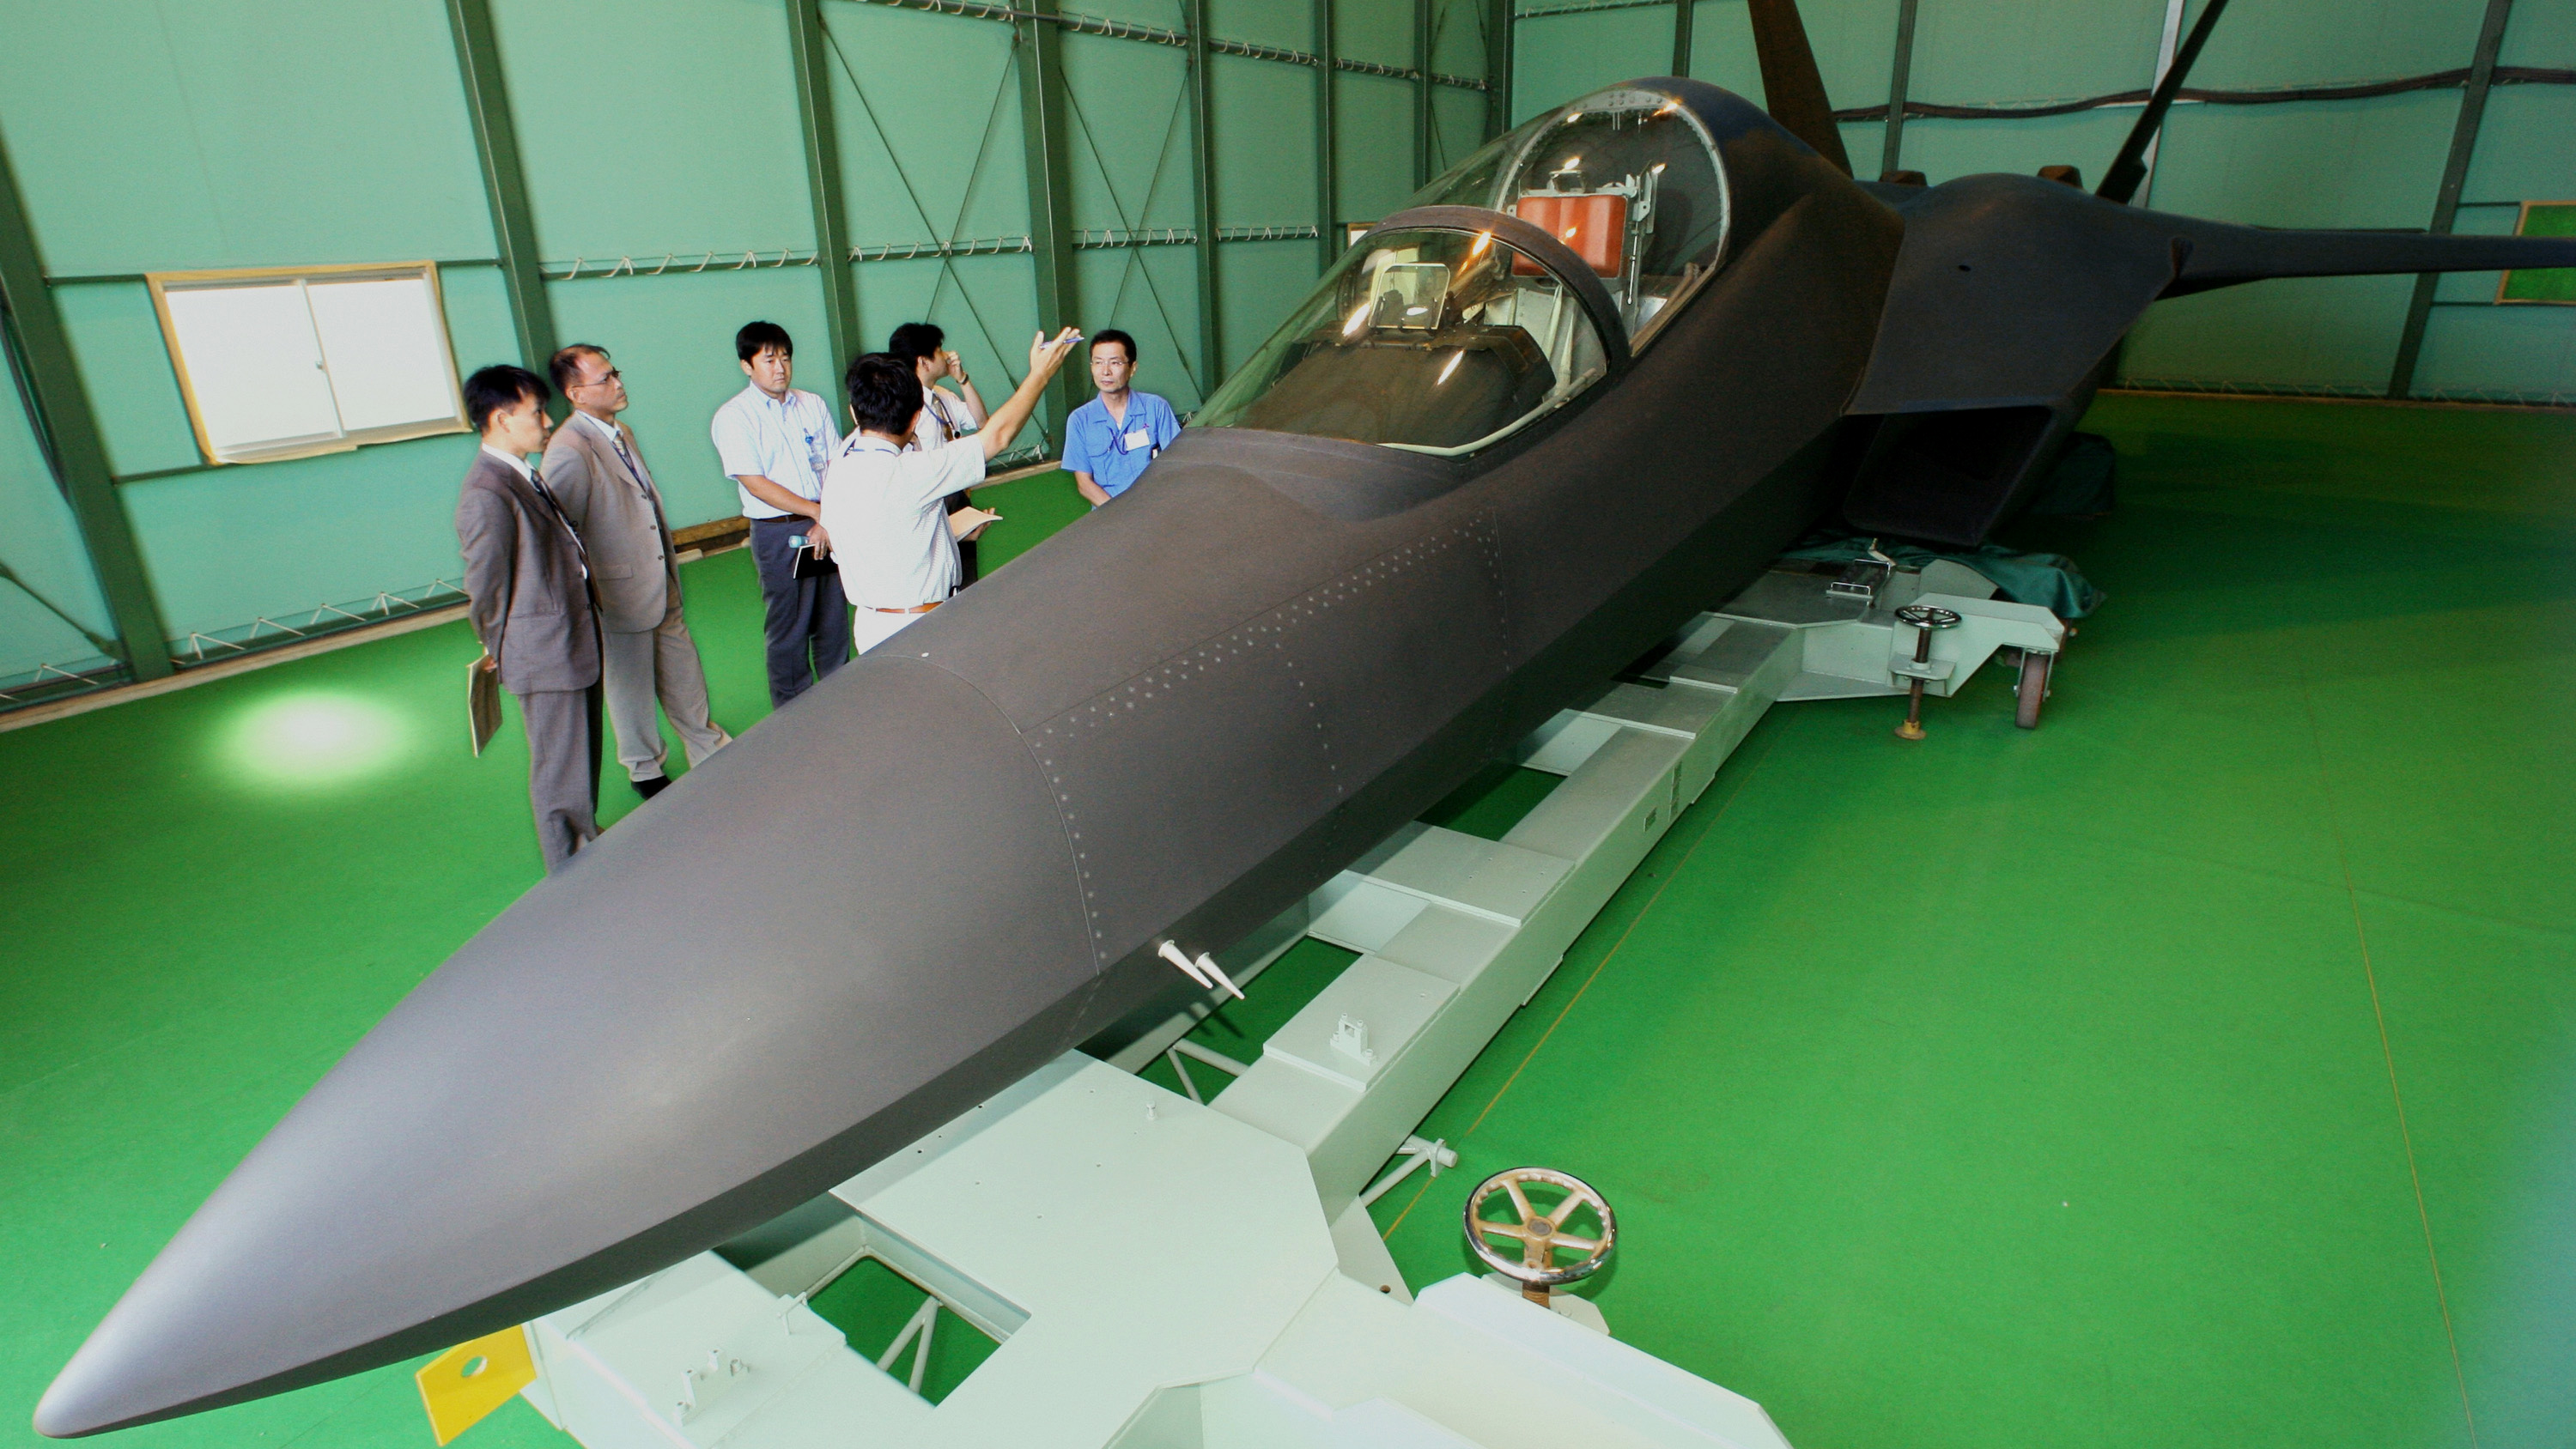 Технологический макет японского истребителя 5-го поколения ATD-X, разработанного концерном Мицубиси и Техническим исследовательским и проектным институтом (Technical Research and Development Institute – TRDI) в сотрудничестве с фирмами США. Он представляет основной одноместный боевой вариант самолета F-3 «Синсин»